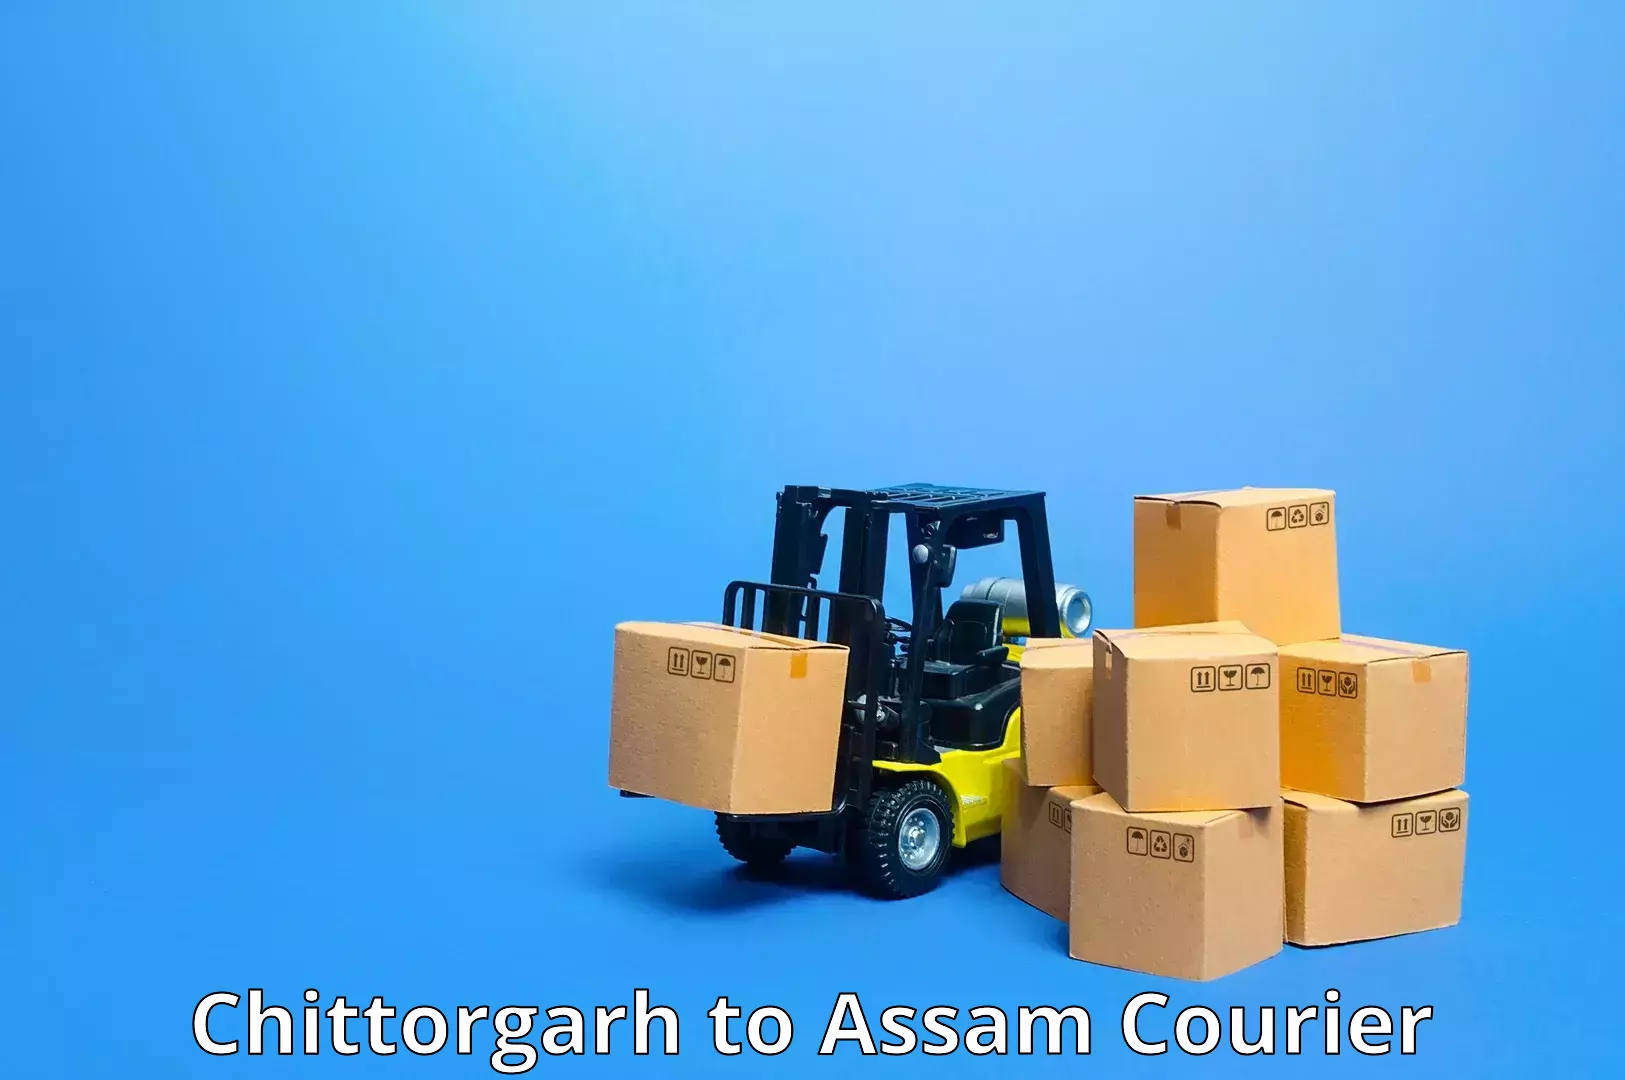 Multi-city courier Chittorgarh to Sivasagar